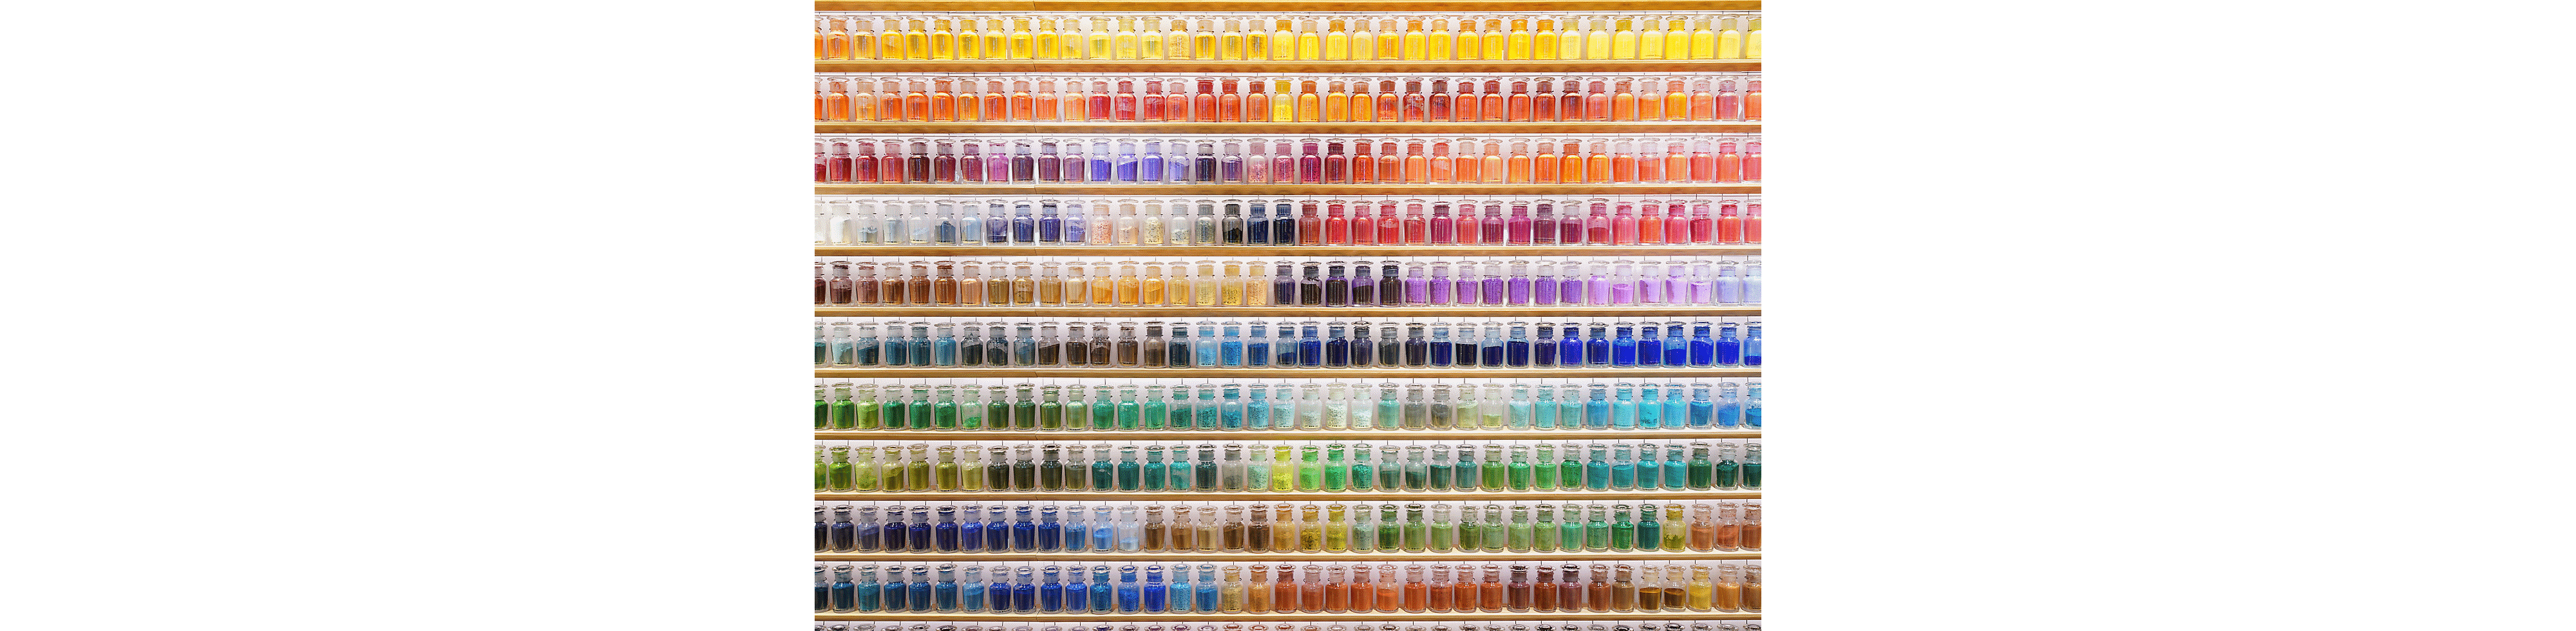 Exemplu de imagine a unui perete plin de sticle colorate